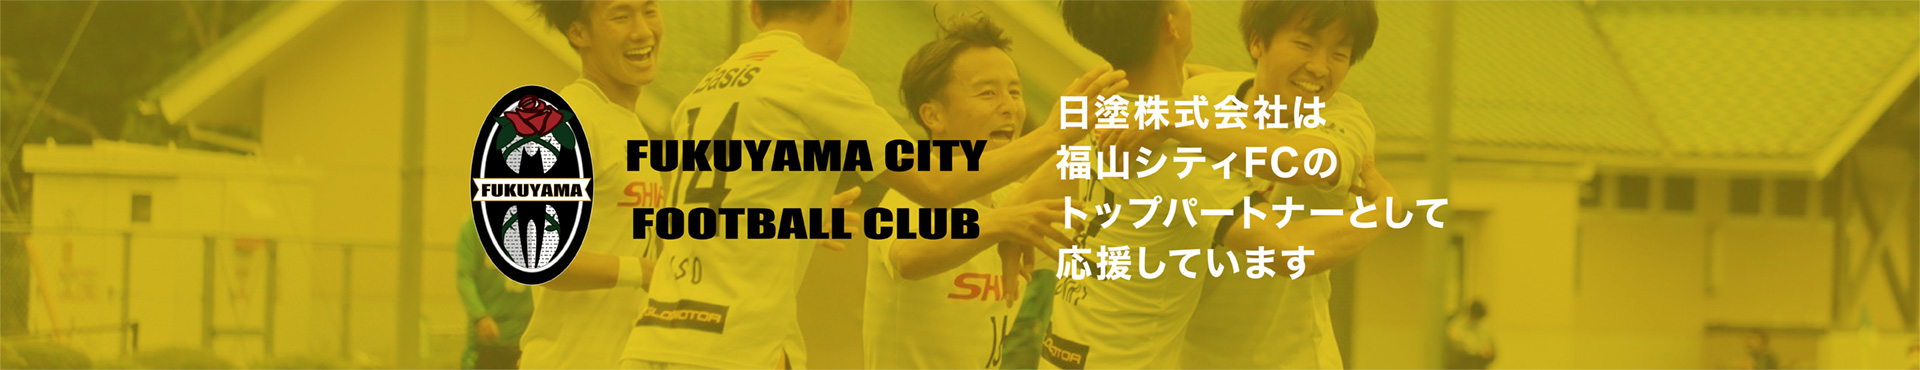 日塗株式会社は福山シティFCのトップパートナーとして応援しています